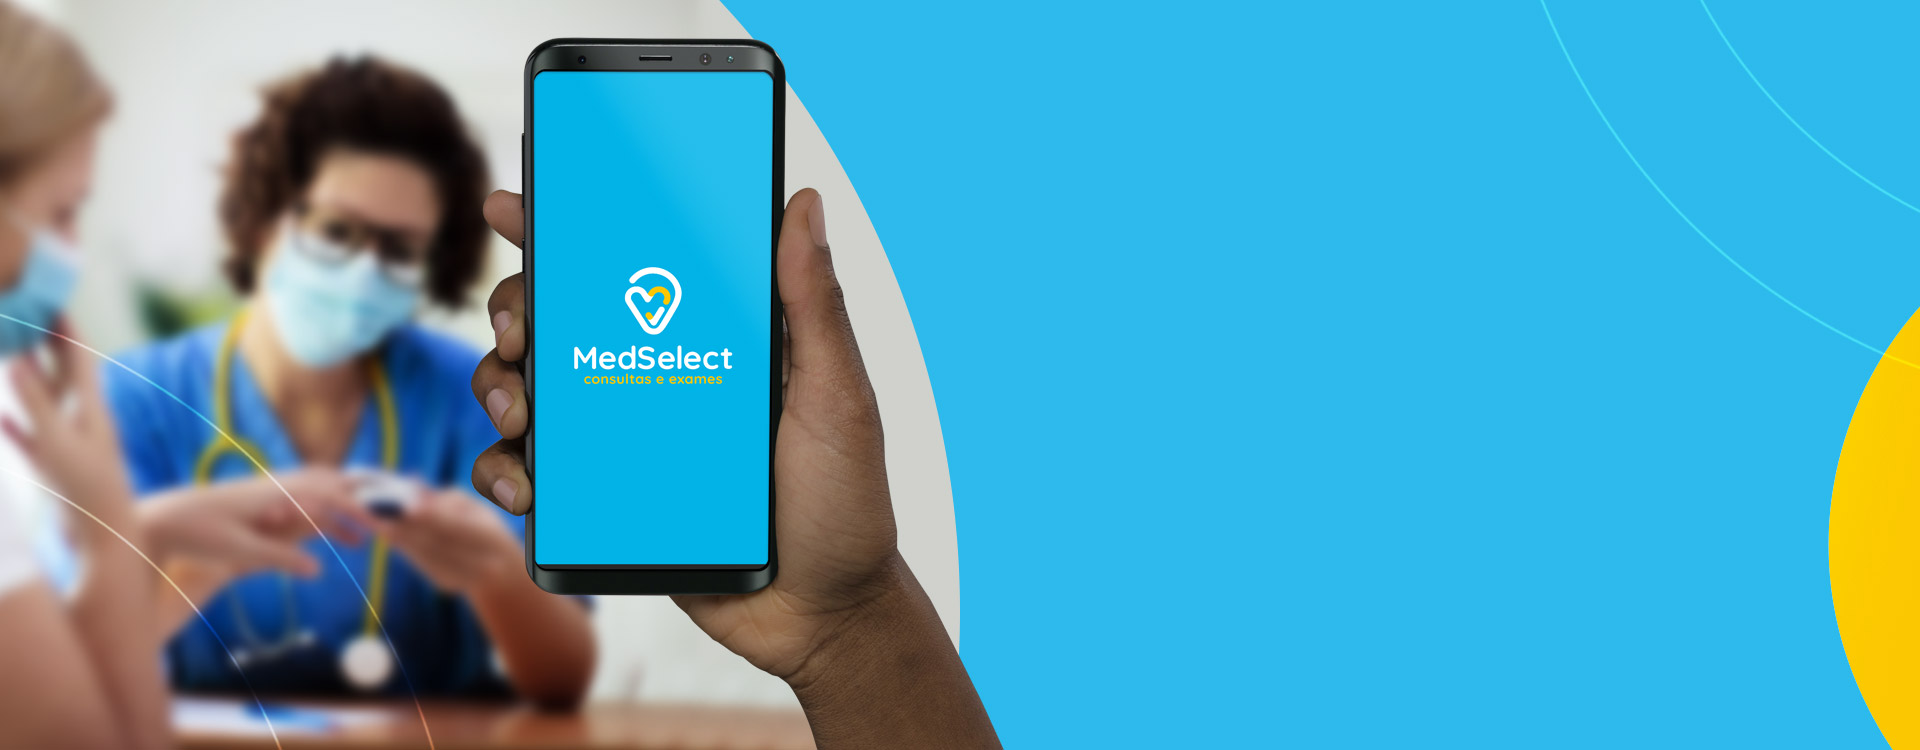 Marque sua consulta com a MedSelect